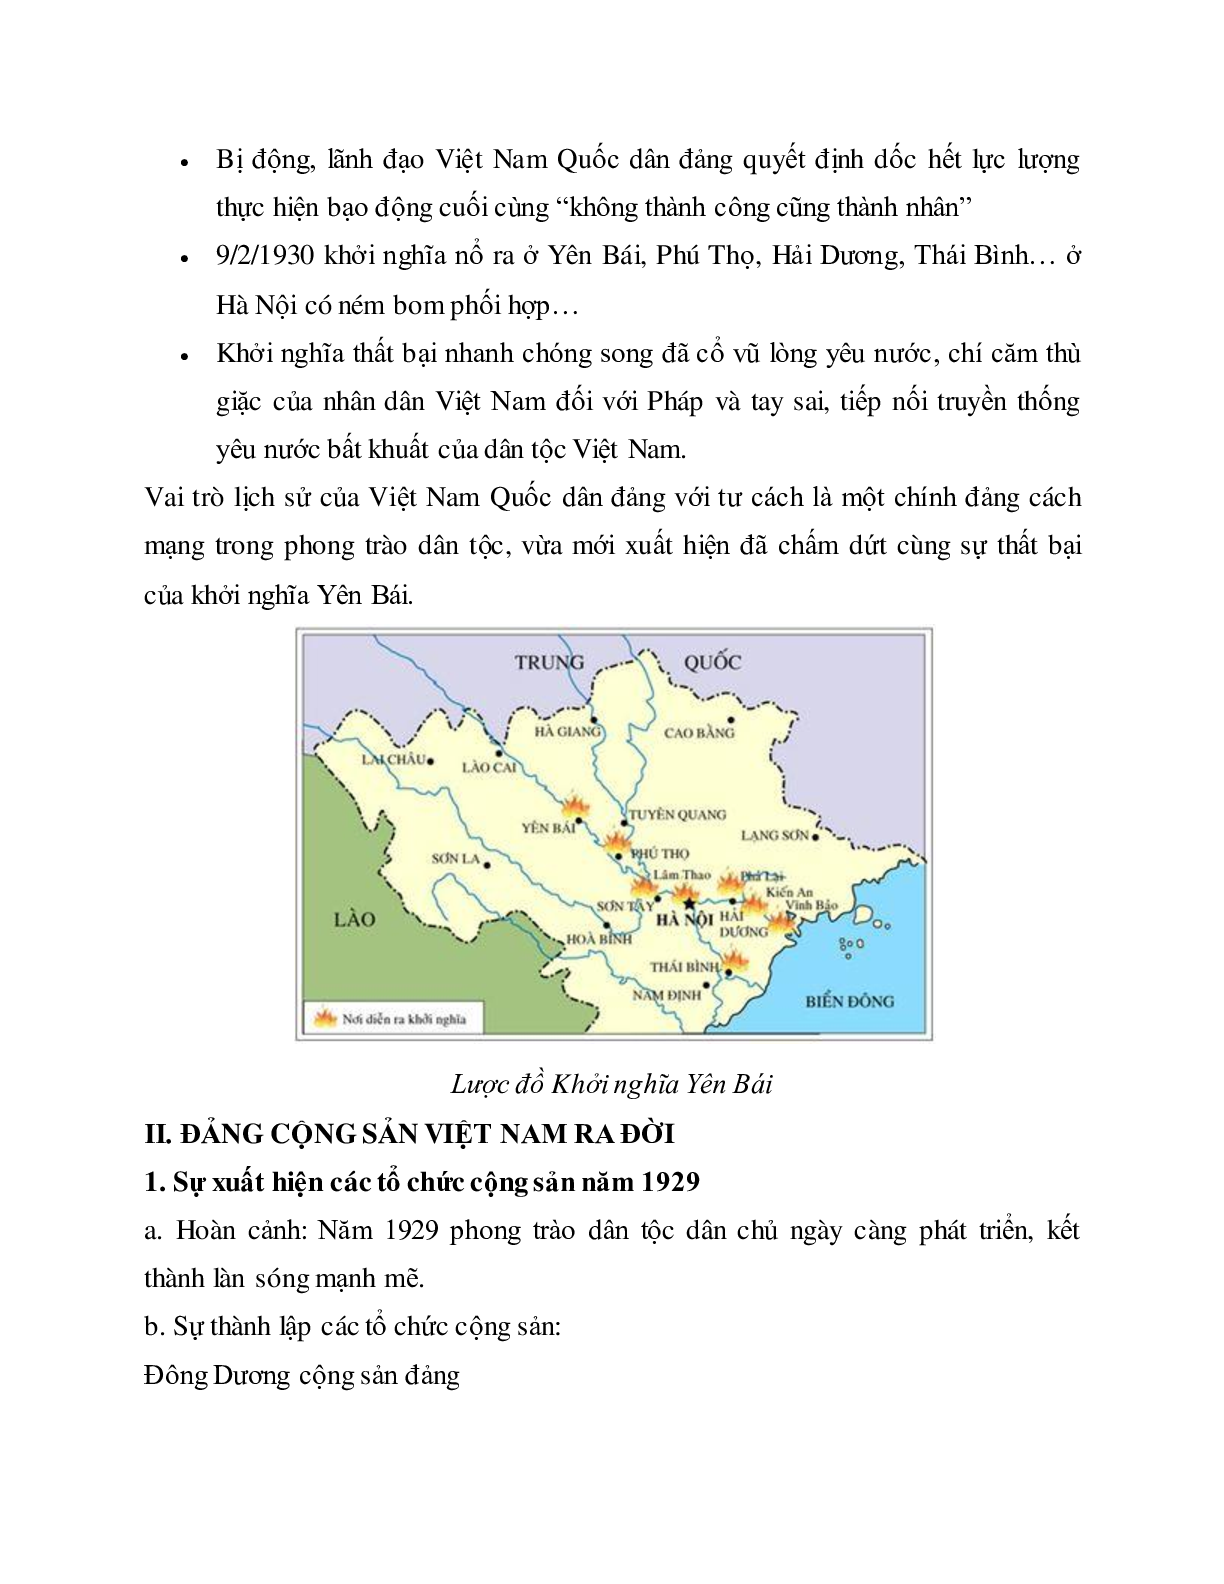 Lý thuyết môn Lịch sử 12 - bài 13: Phong trào dân tộc dân chủ ở Việt Nam từ năm 1925 đến năm 1930 mới nhất (trang 5)